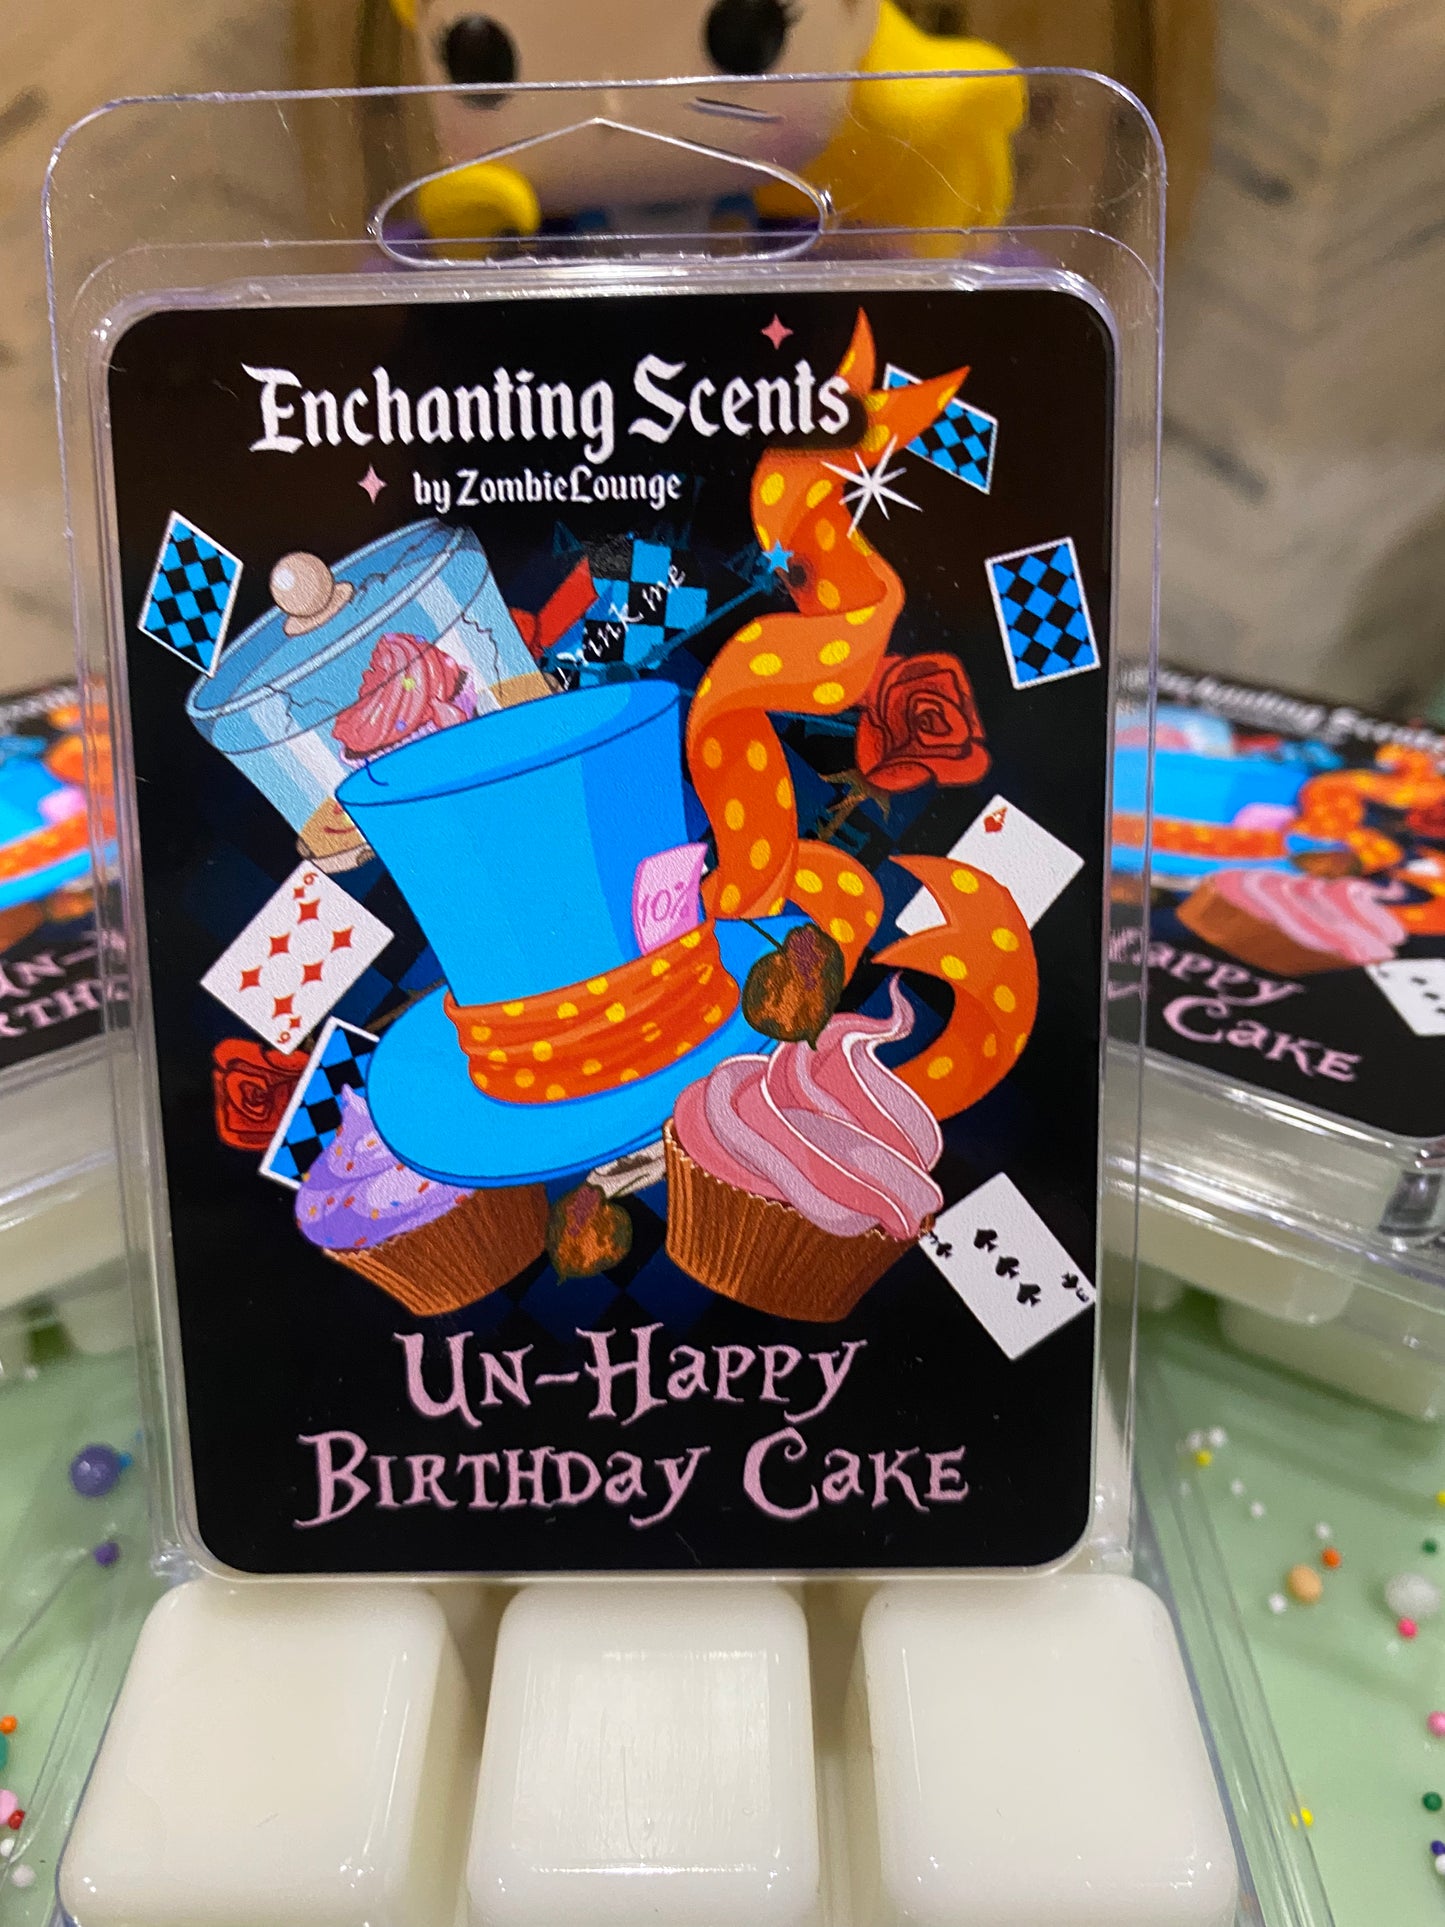 UnHappy Birthday Cake Wax Melts